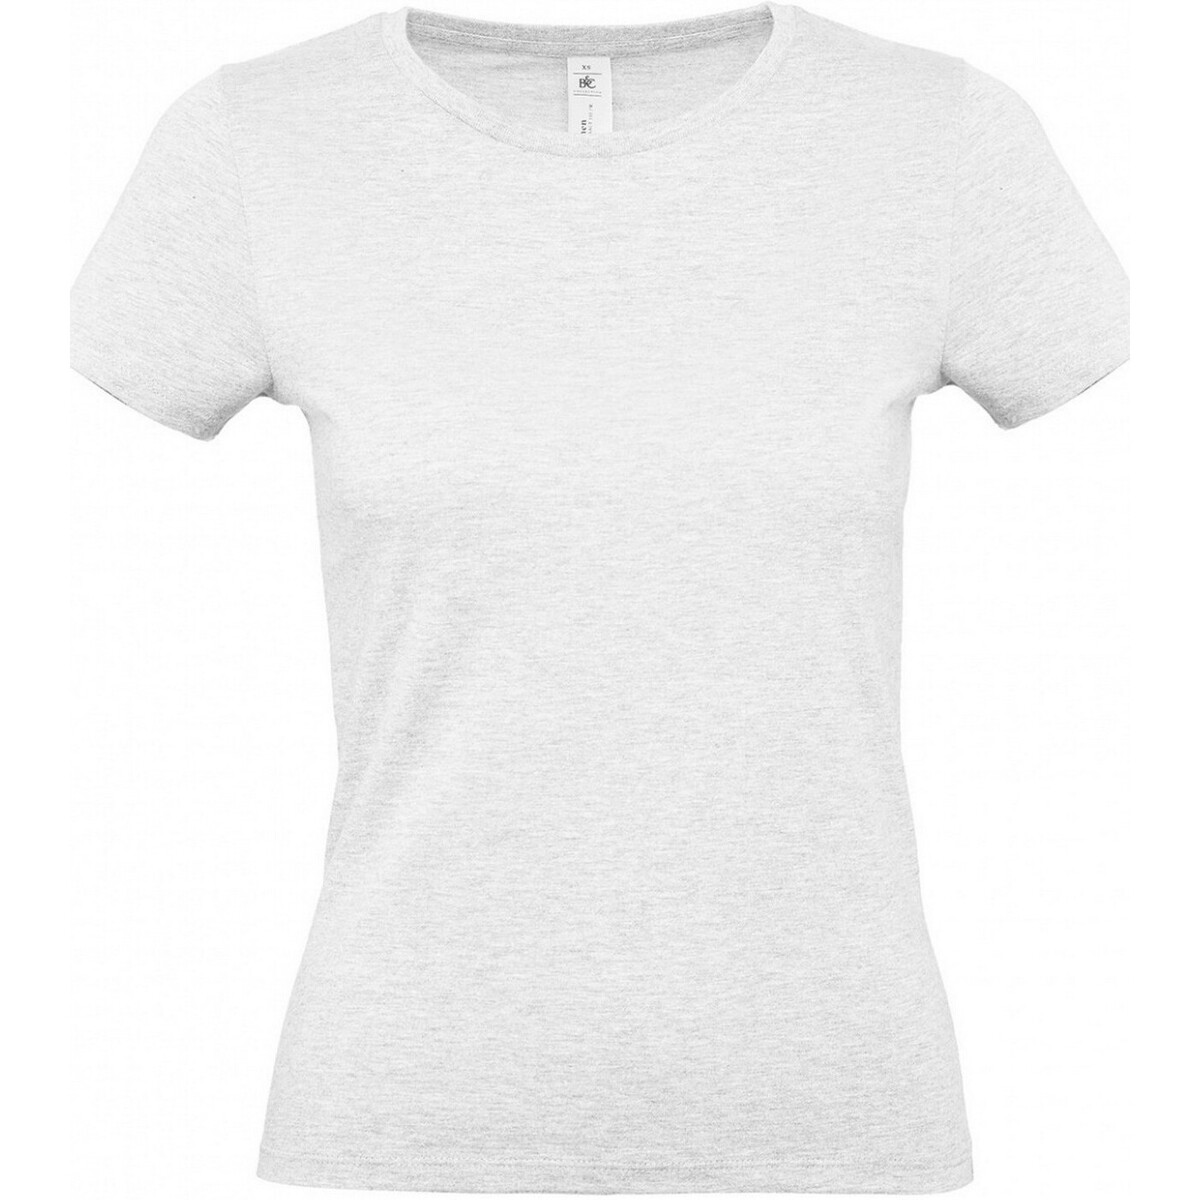 Vêtements Femme T-shirts manches longues Rick Owens DRKSHDW tassel-detail button-down shirt E150 Gris